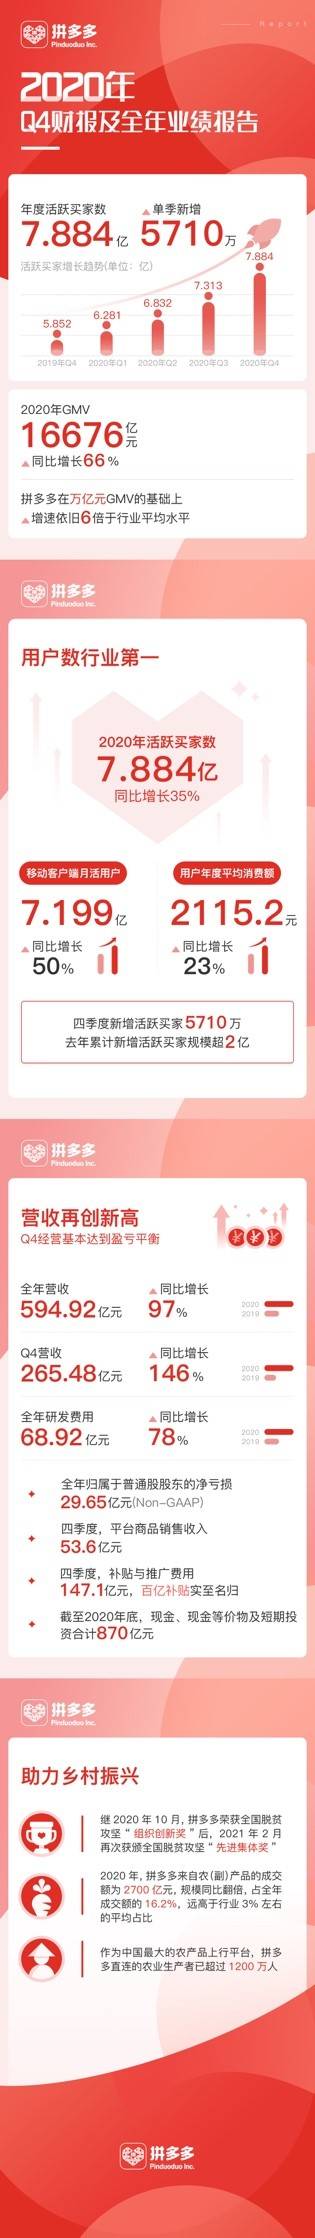 拼多多用户数7.88亿成为中国电商第一-最极客